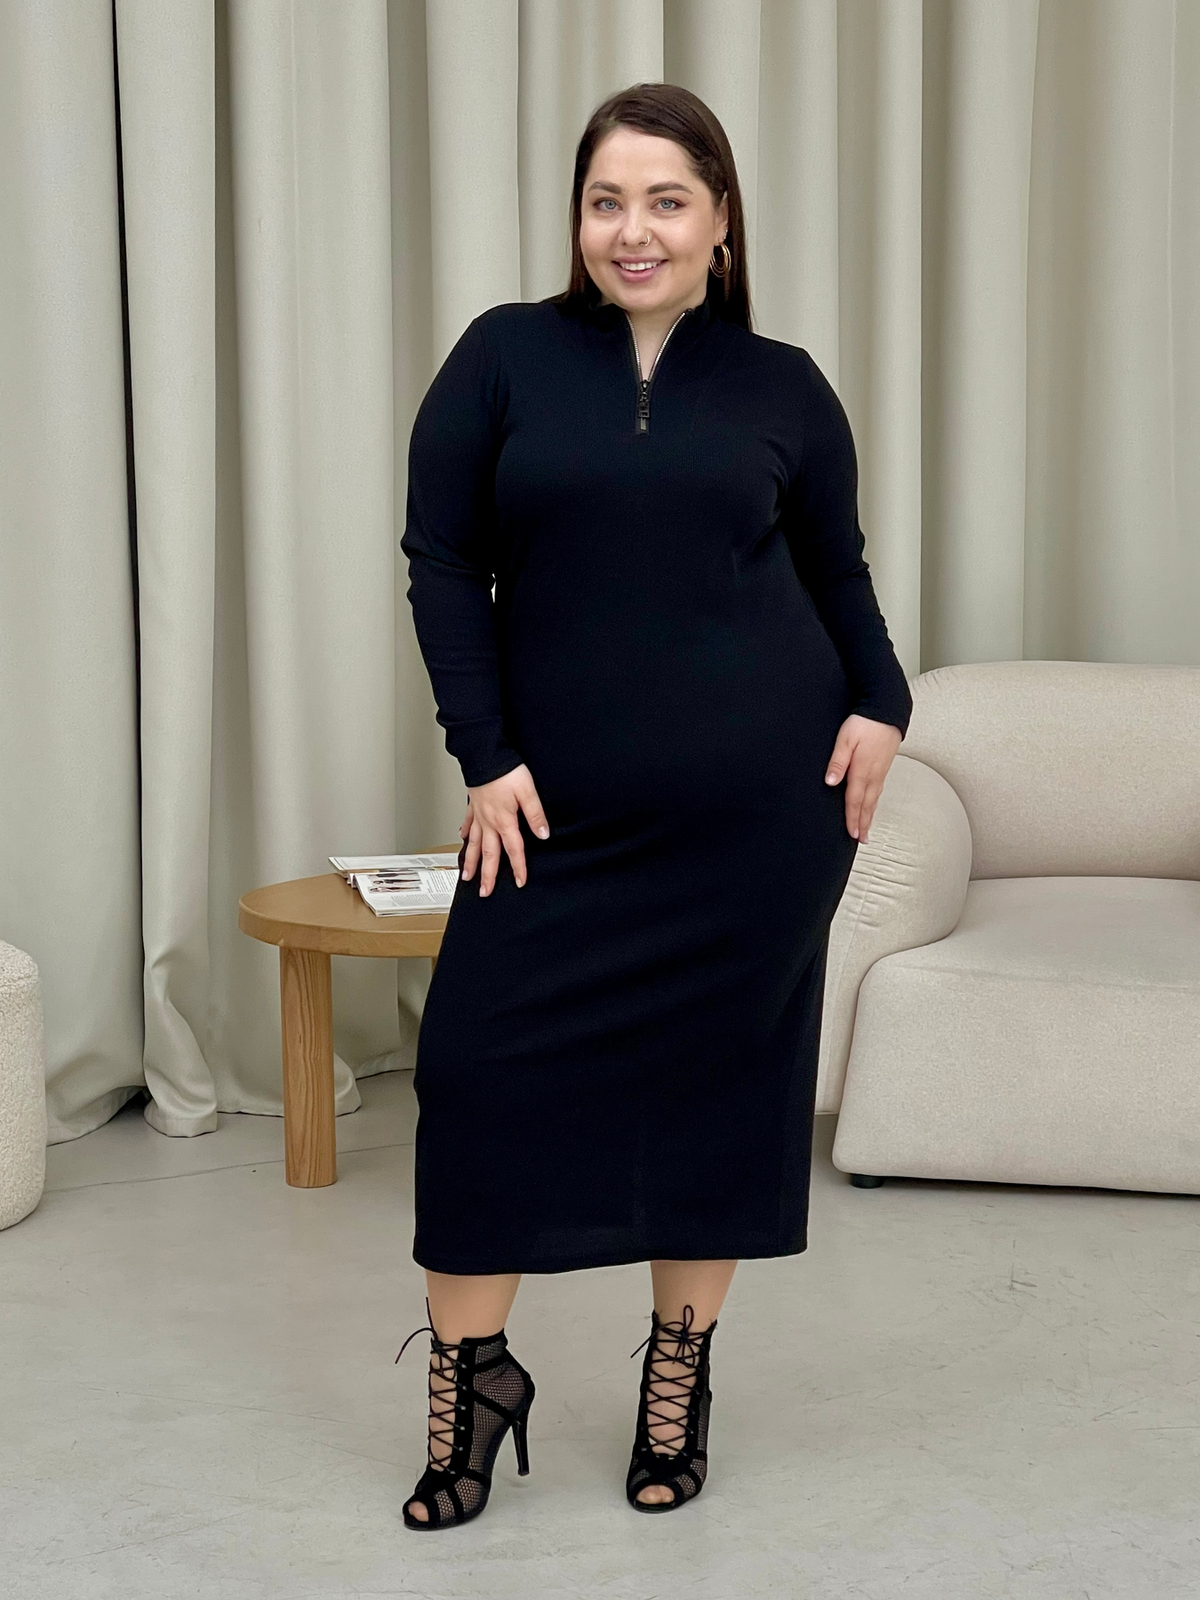 Купить Длинное черное платье в рубчик с длинным рукавом Merlini Венето 700001141, размер 42-44 (S-M) в интернет-магазине